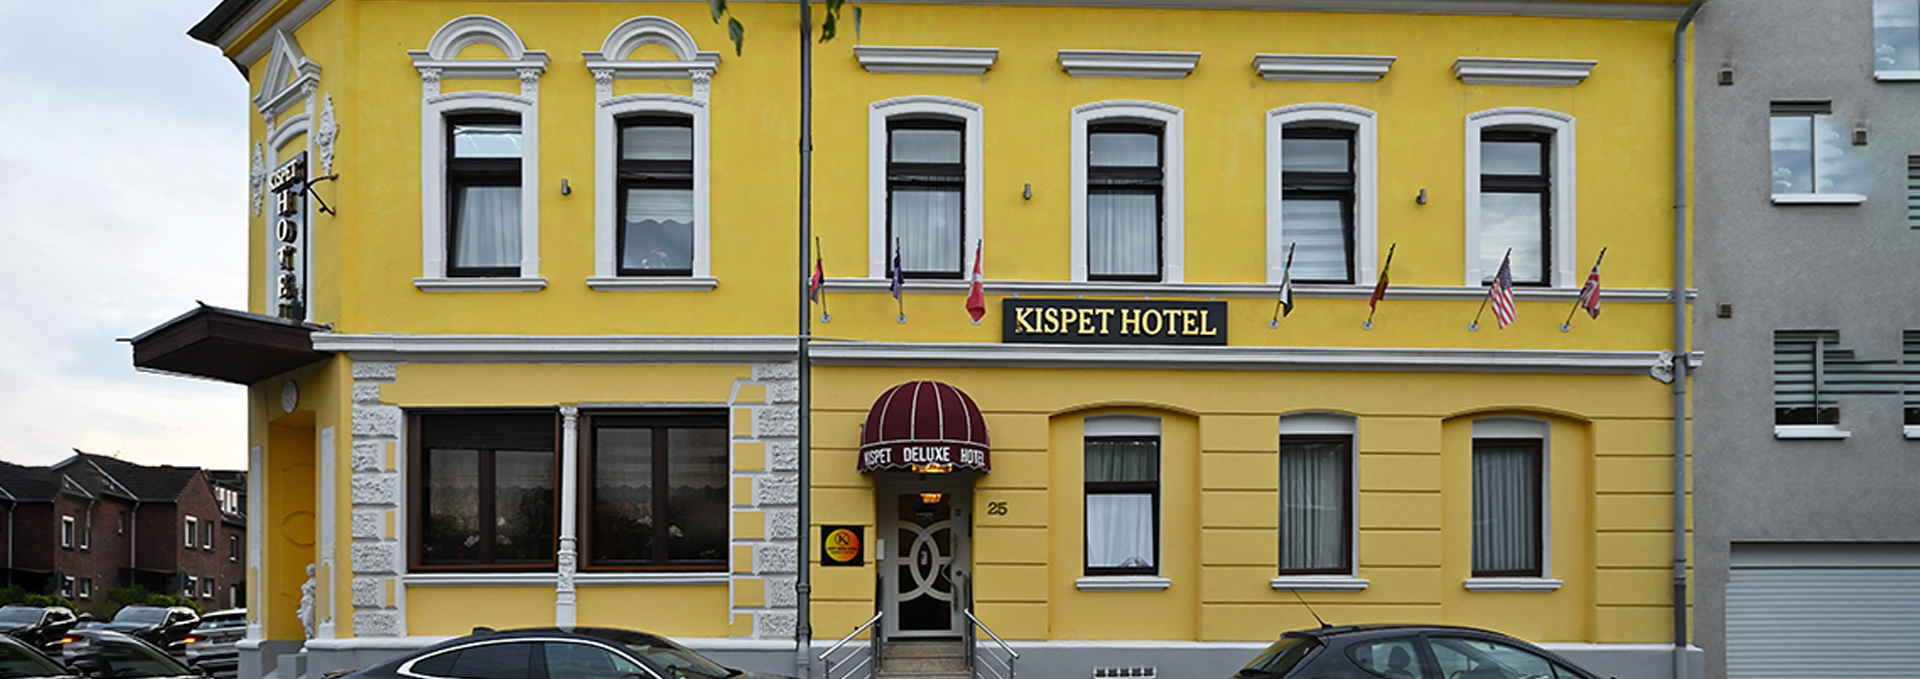 kıspet-deluxe-hotel-banner-1